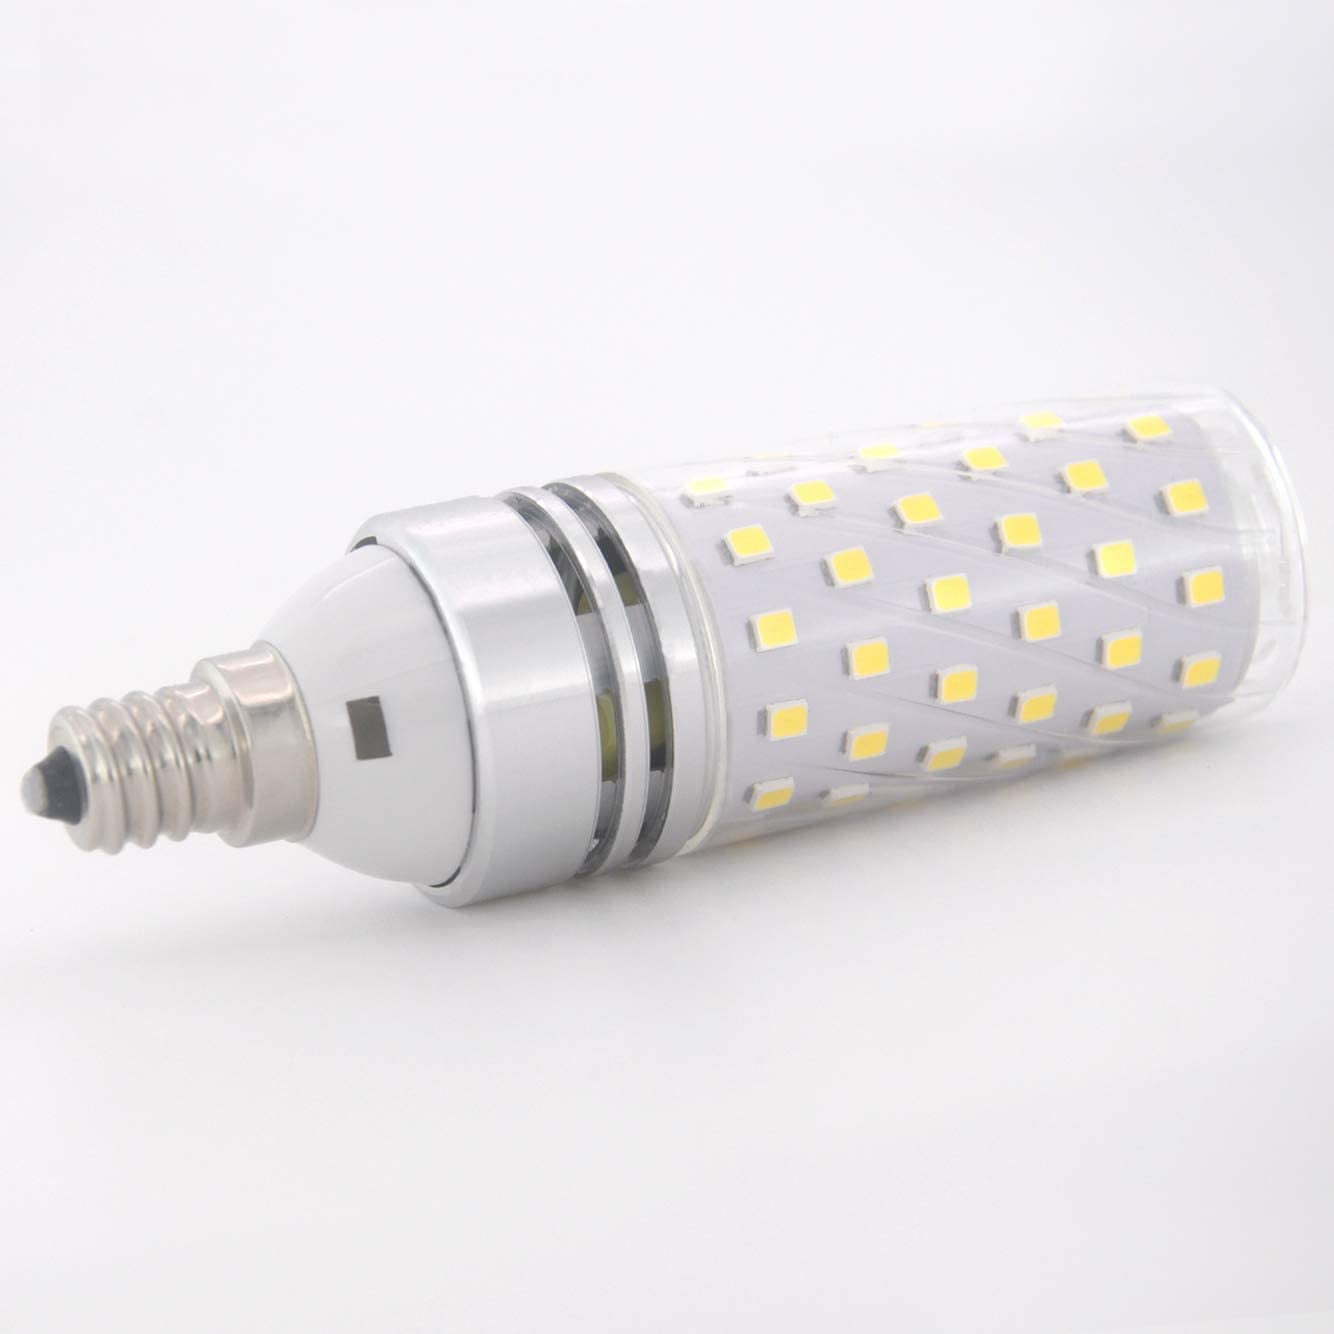 STVONO LED Corn Bulbs Home Lighting 1Pack 16W Warm White 3000K LED Candelabra Light Bulbs Non-Dimmable LED Lamp for Ceiling Fan CRI80+ LED Chandelier Bulbs E12 Base 1500LM 100W Equivalent 